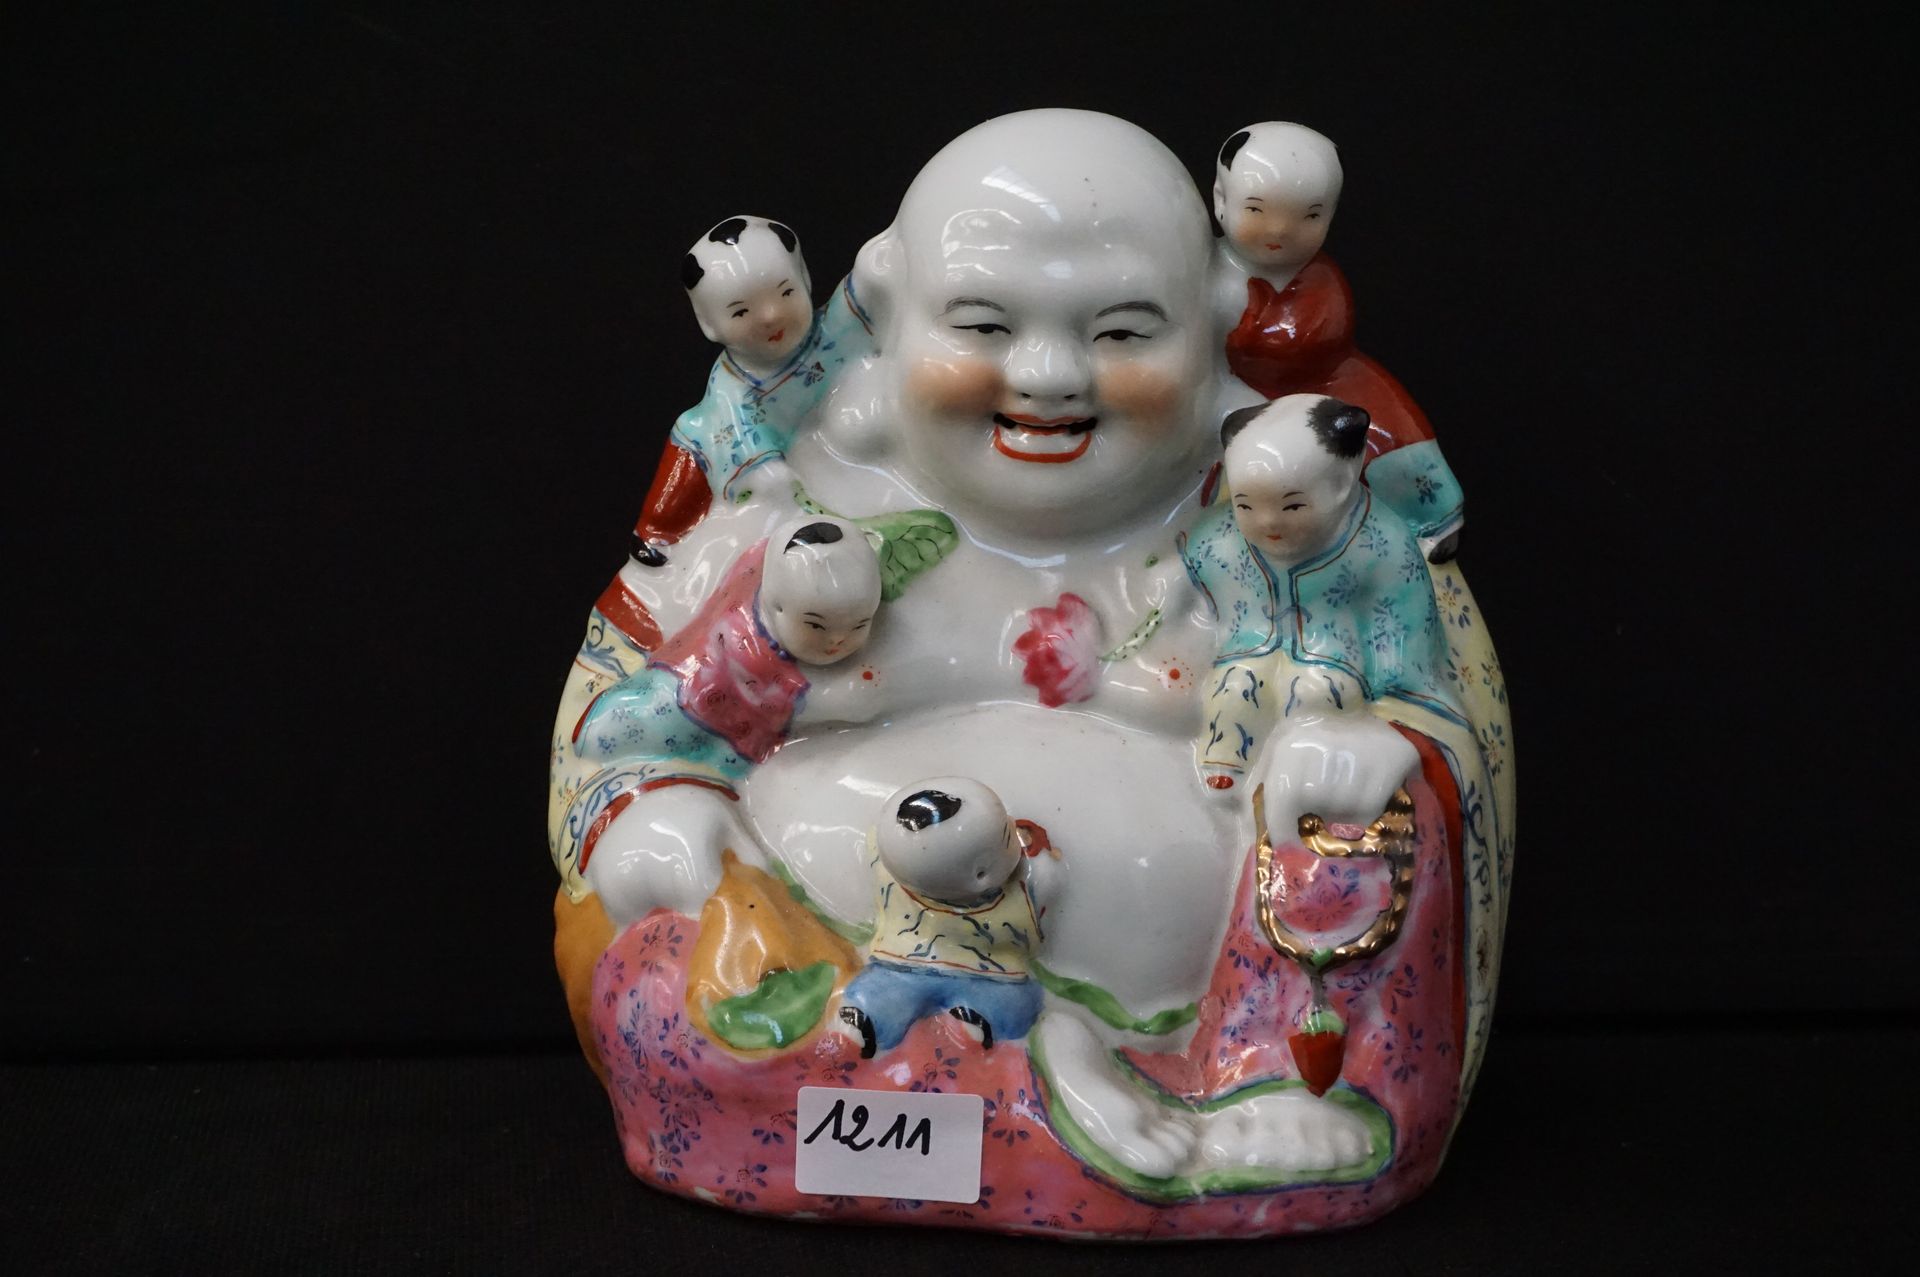 Null Escultura de porcelana china - "Bouddha con niños" - H: 25 cm